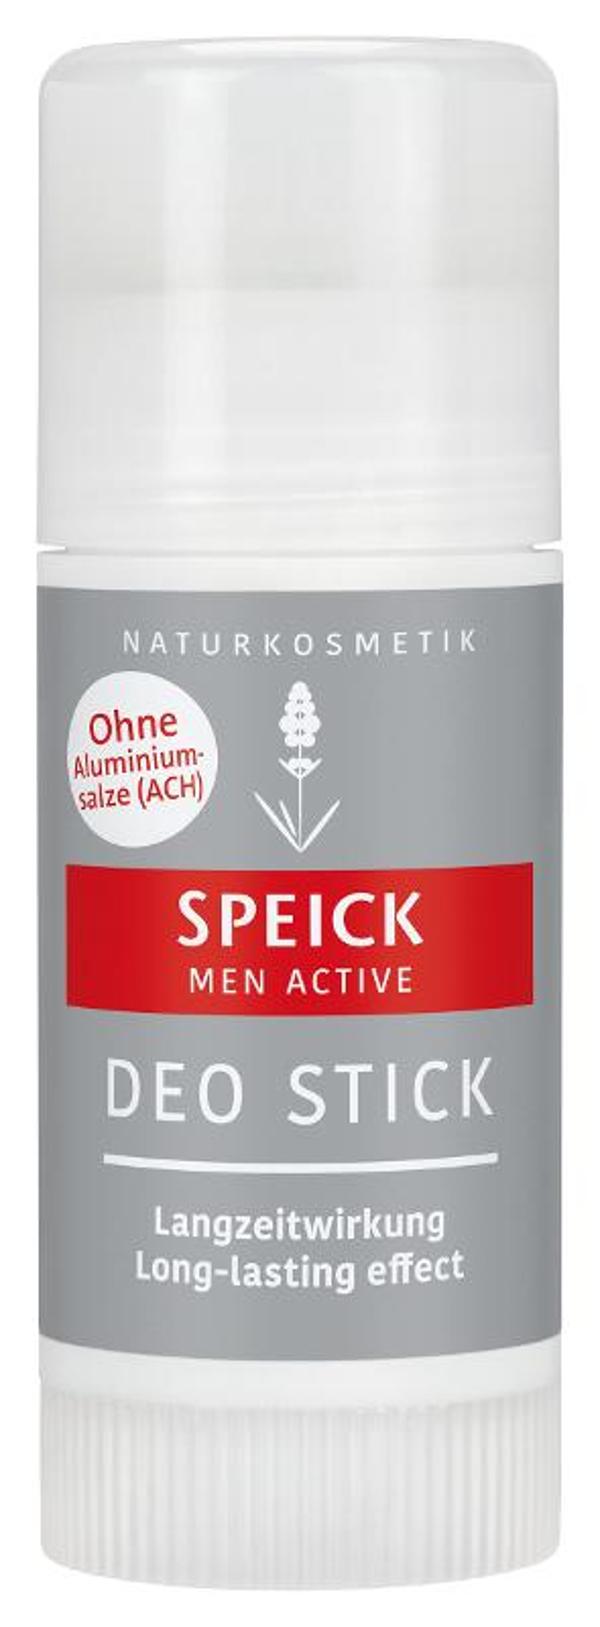 Produktfoto zu Men Active Deo Stick (auch für Frauen geeignet)